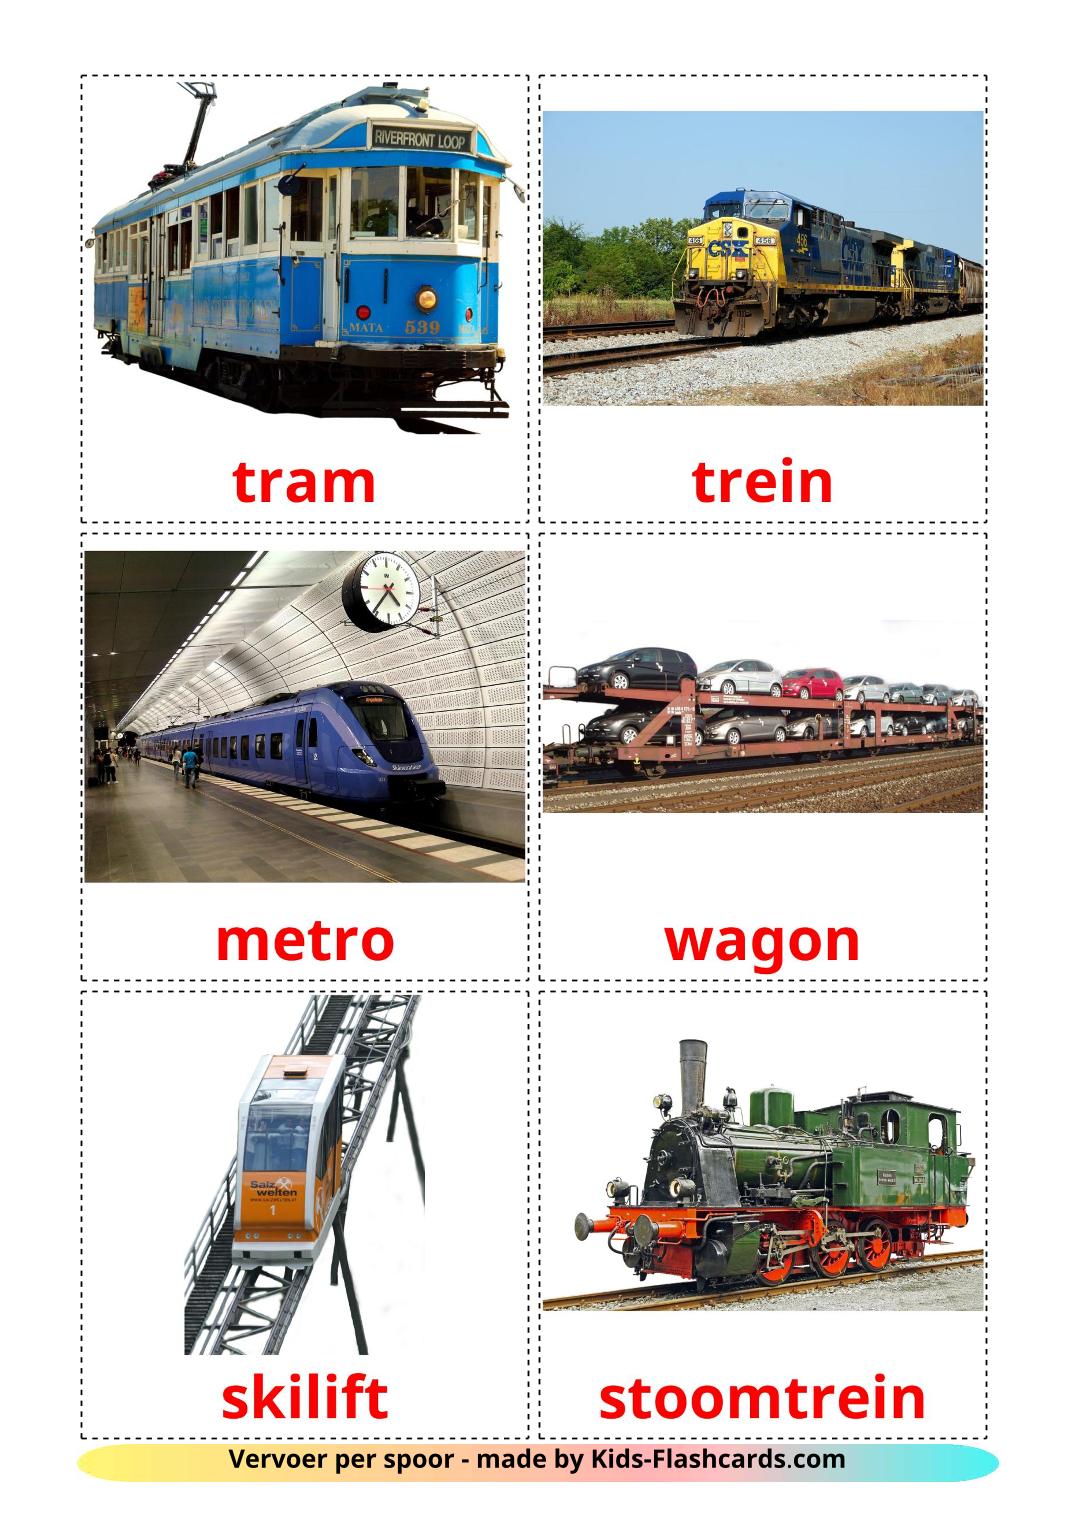 Vervoer per spoor - 18 gratis printbare nederlandse kaarten